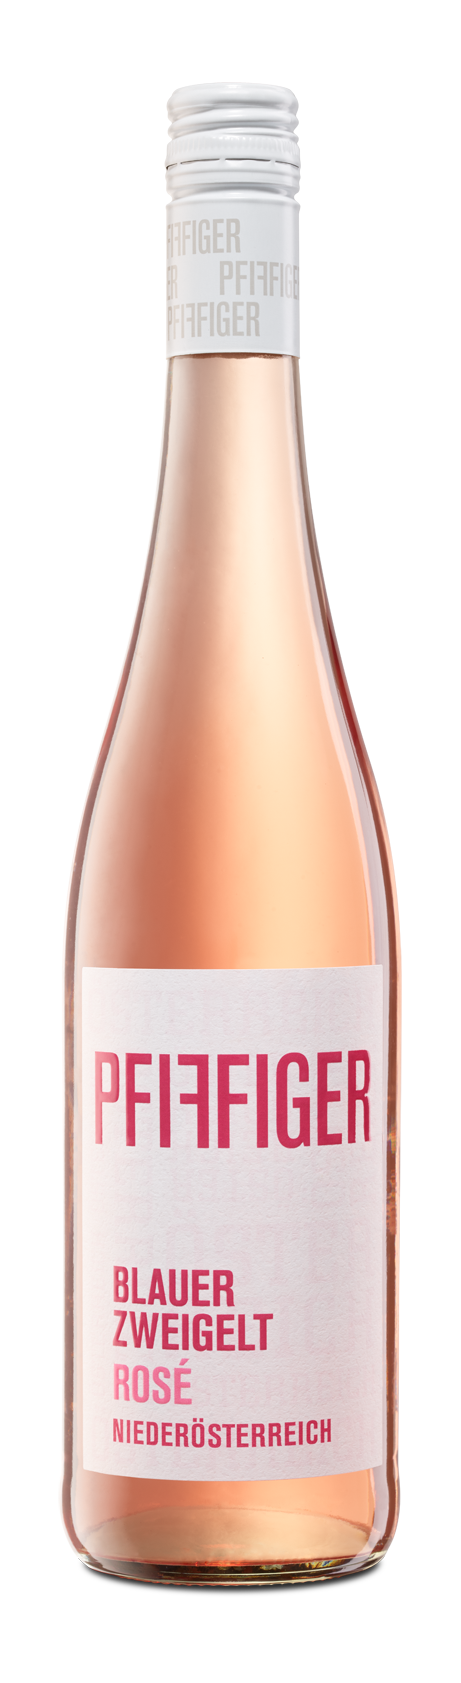 Wines Global - Wine Rosé Pfiffiger Quality Zweigelt – Blauer